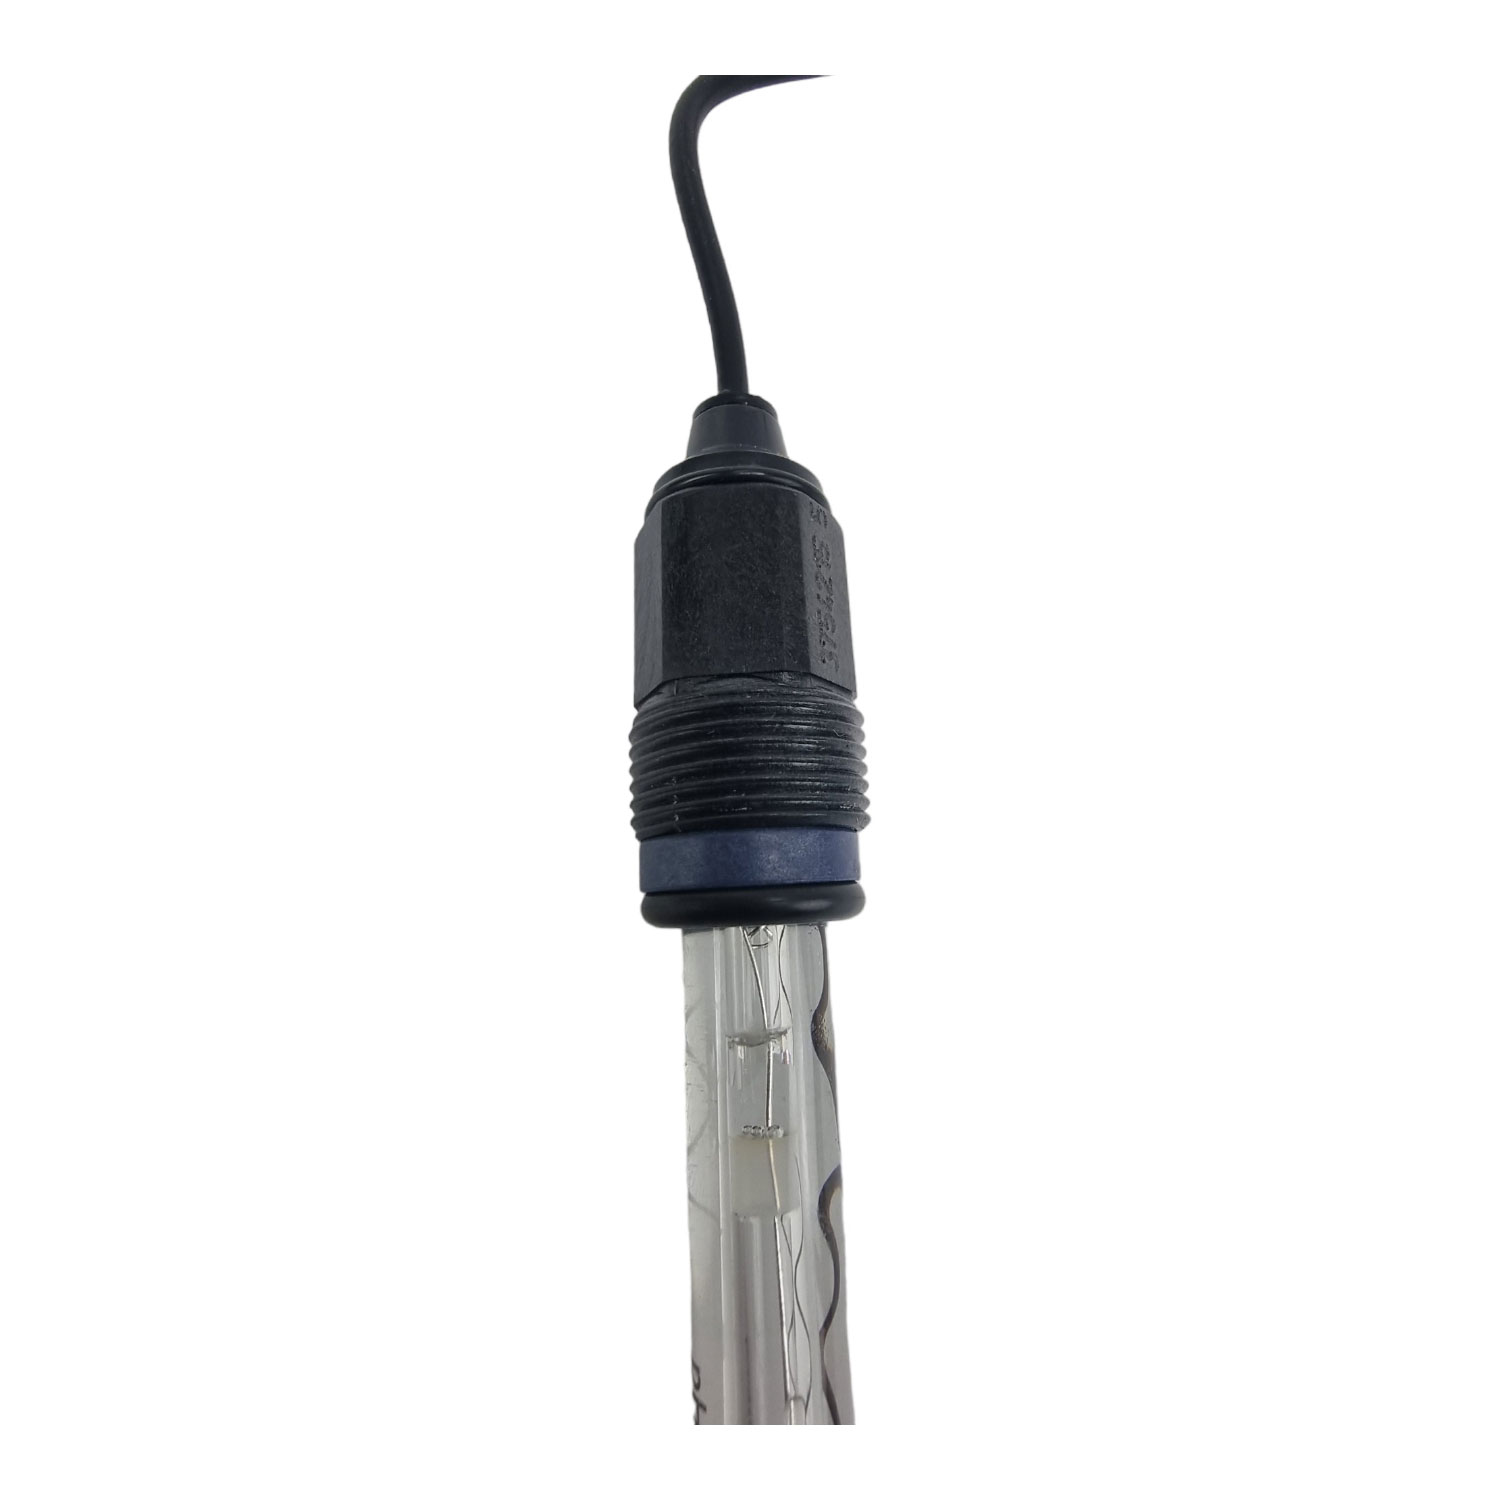 pH-Elektrode 120 mm mit Kabel 0,4 m und Stecker SN 6